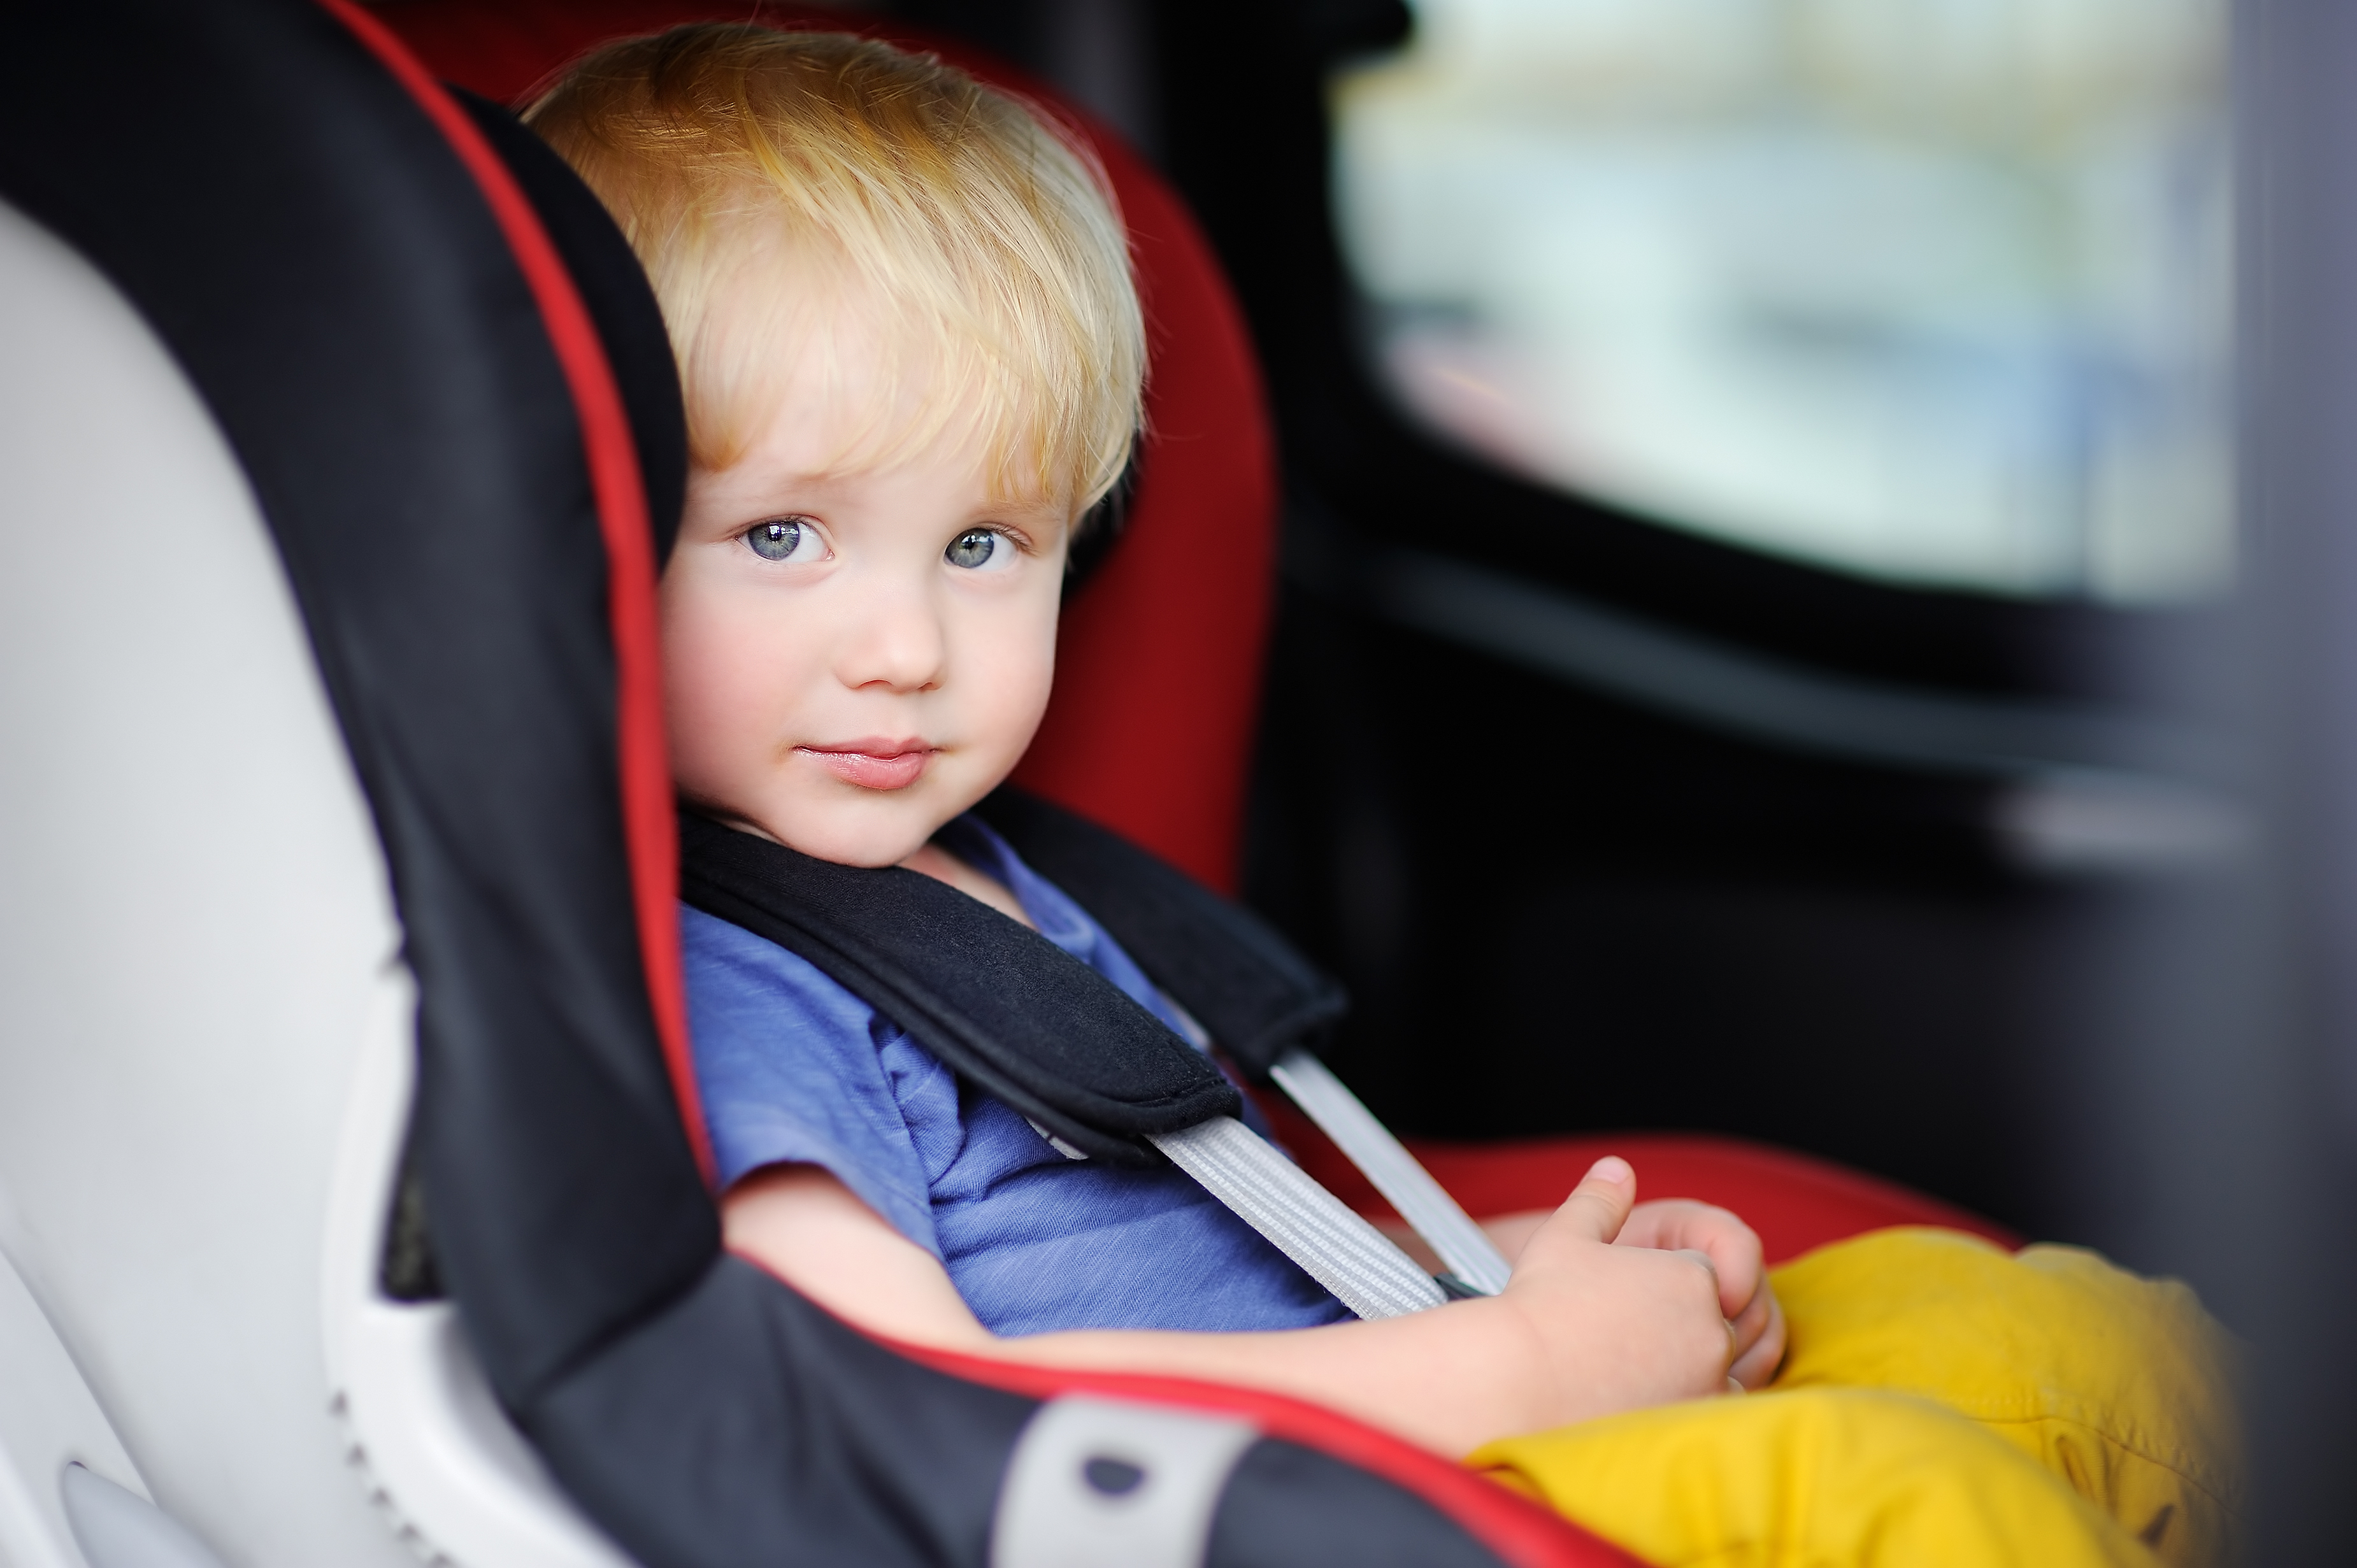 Комфортность ребенка. Детское кресло в машину. Автомобиль для детей. Малыш в автокресле. Ребенок в детском кресле.